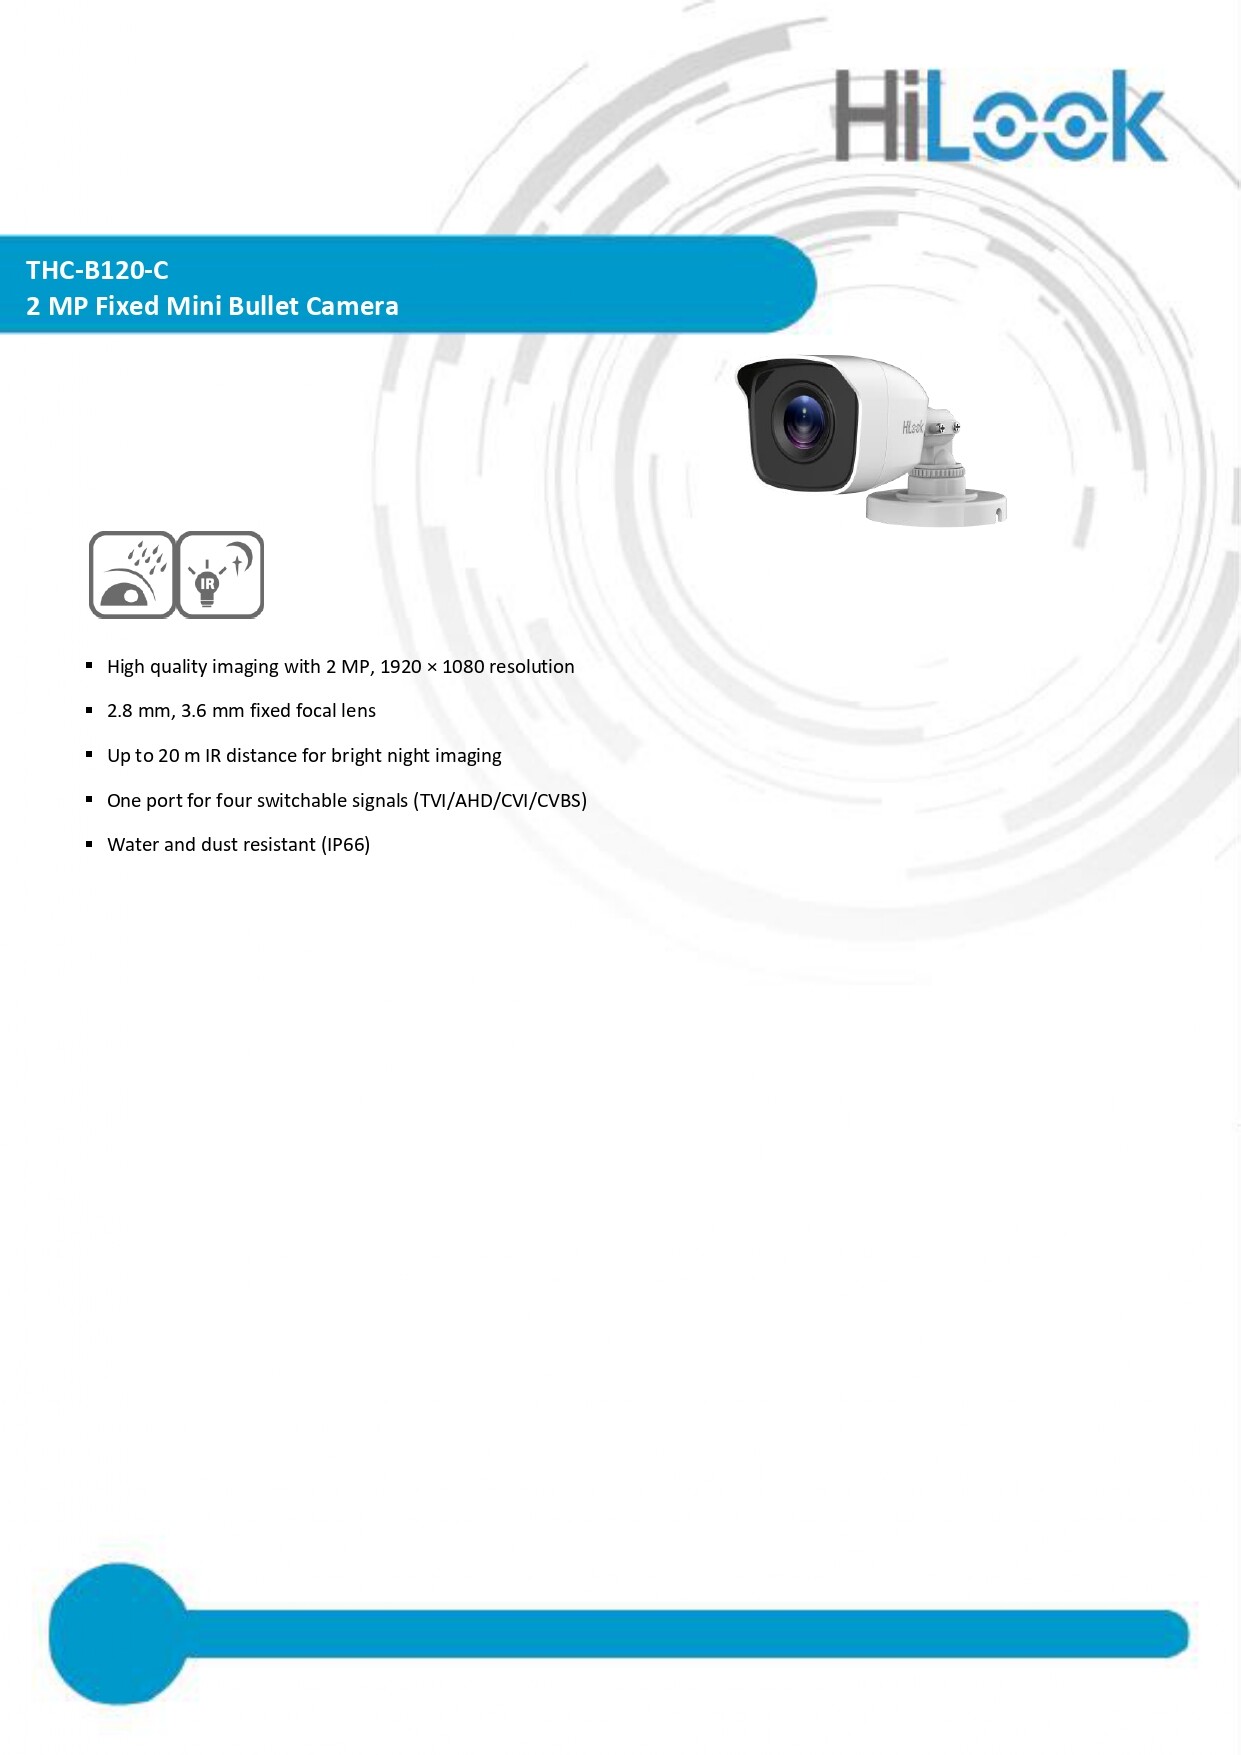 เกี่ยวกับ Hikvision & HILOOK ชุดกล้องวงจรปิด 2MP รุ่น iDS-7204HQHI-M1/S + THC-B120-C จำนวน 4 ตัว BY N.T Computer